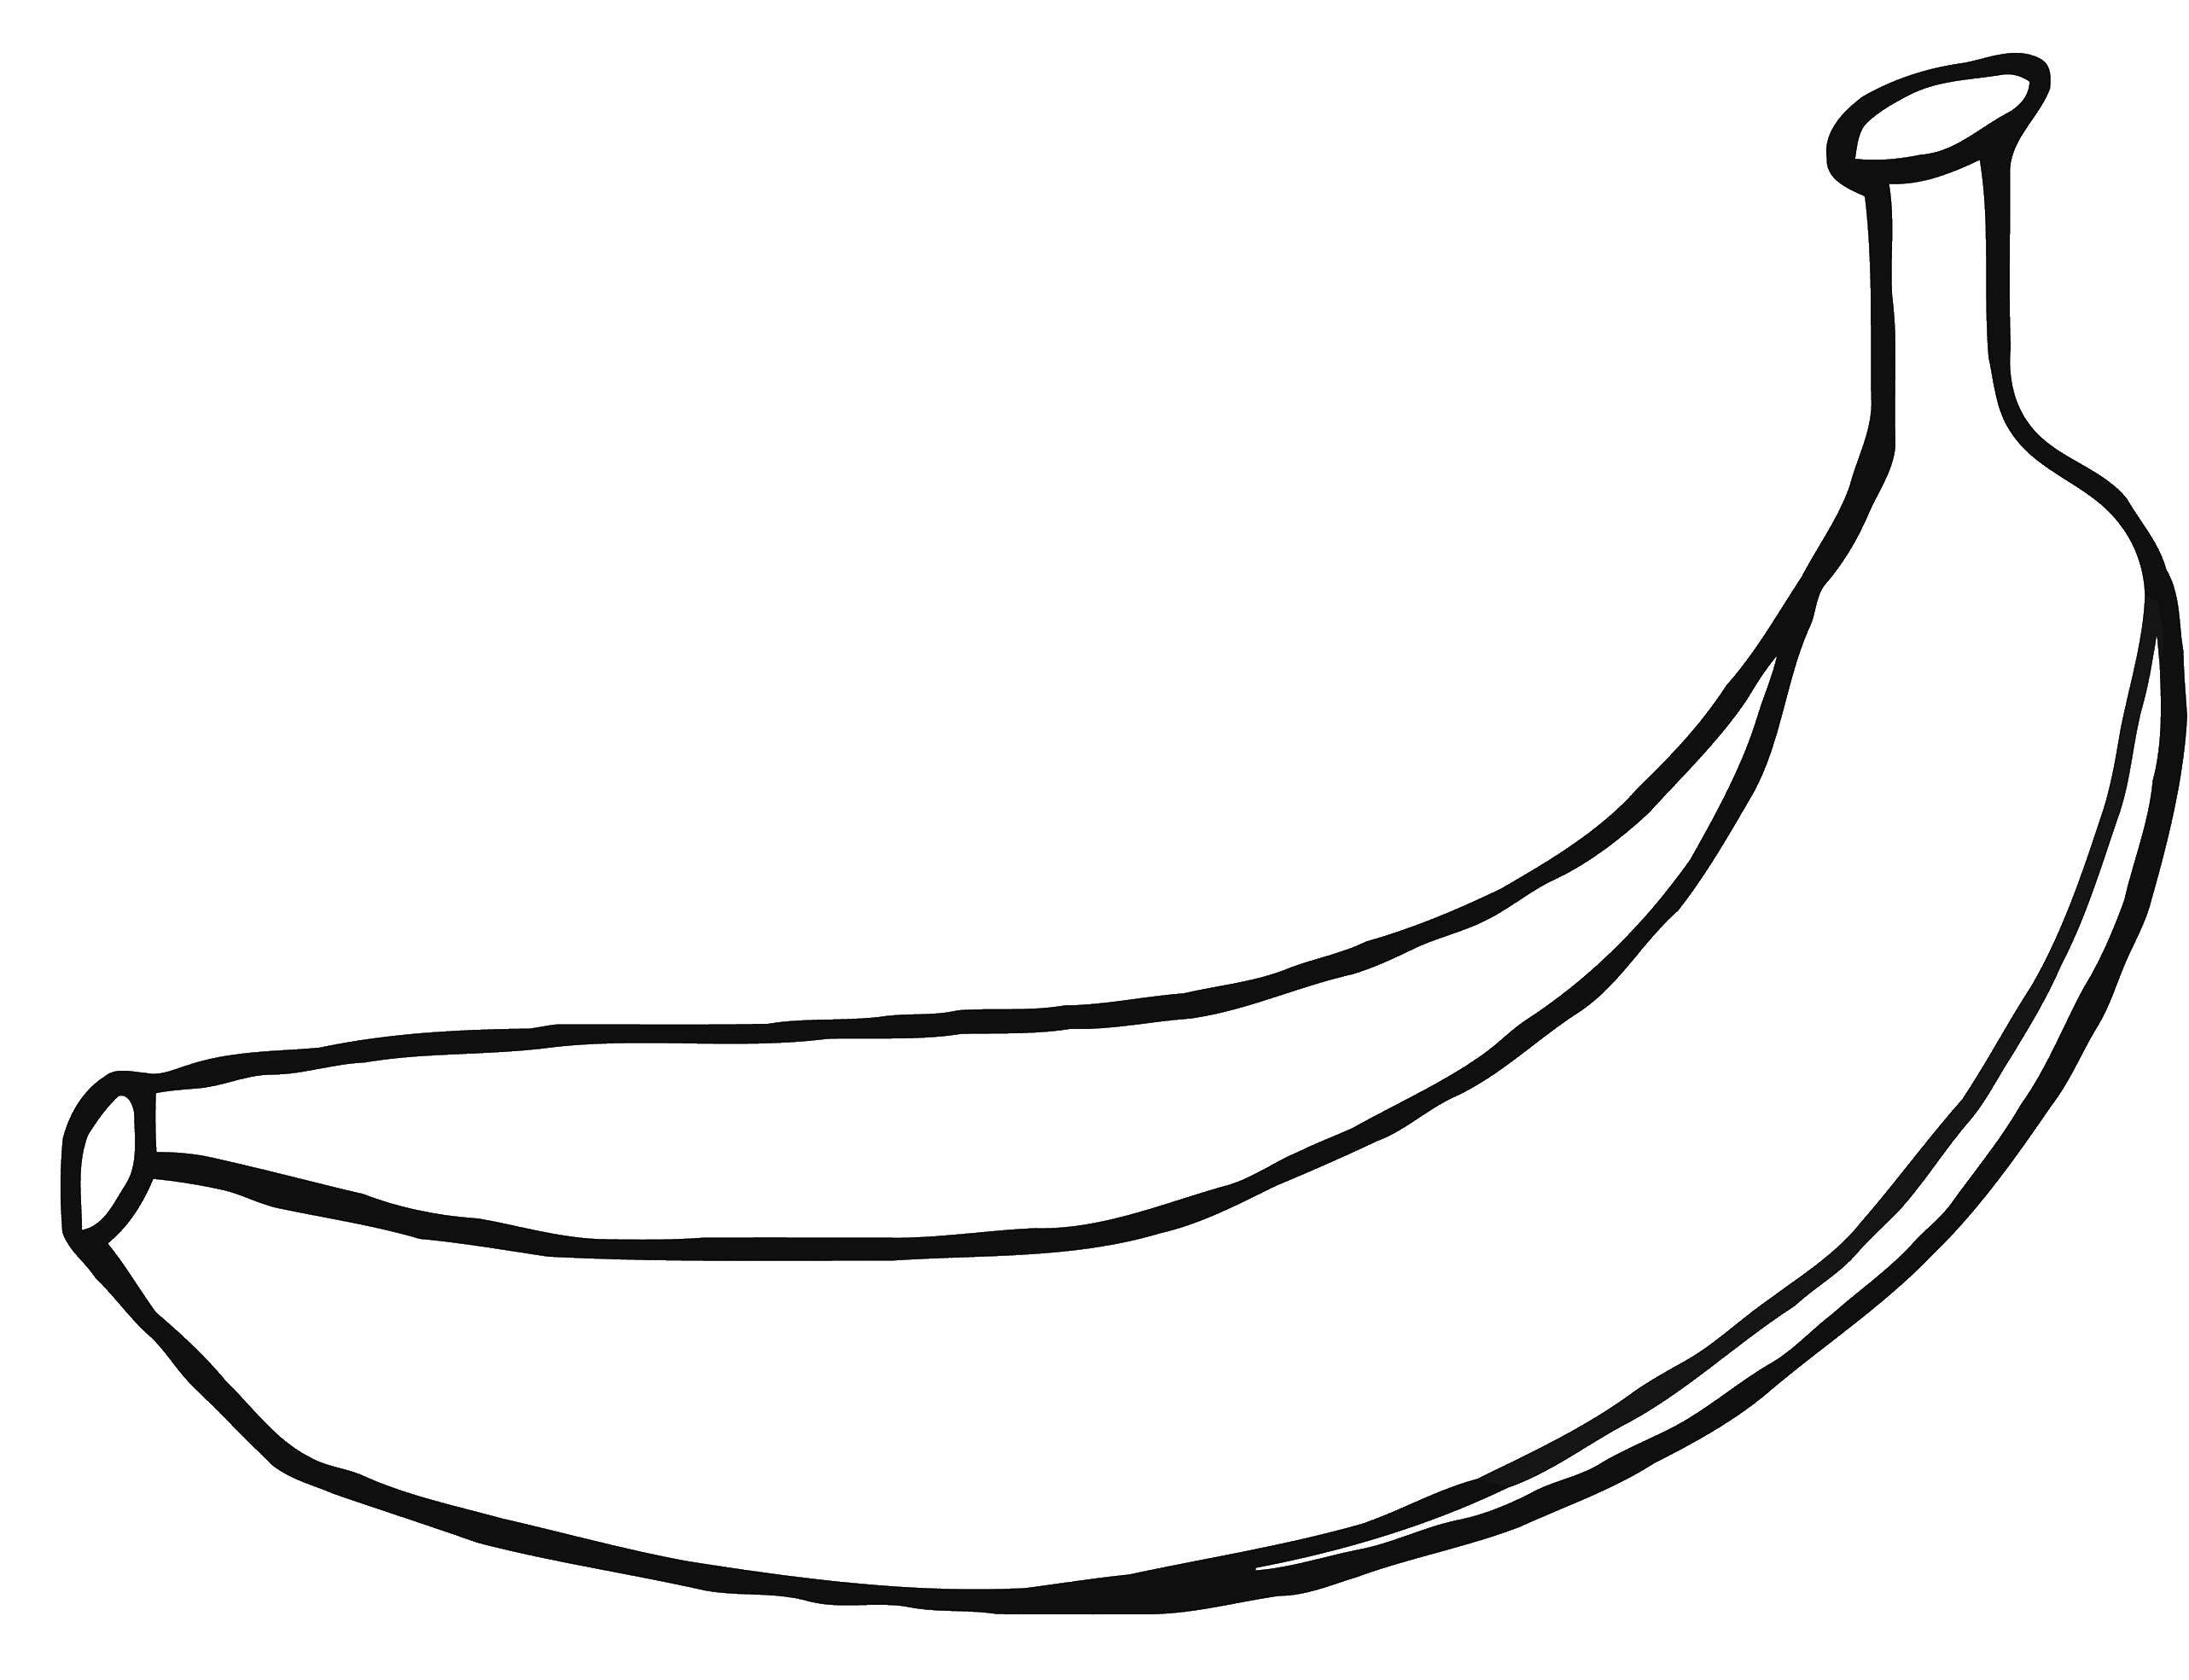 Coloring Banana. Category banana. Tags:  banana, fucky.